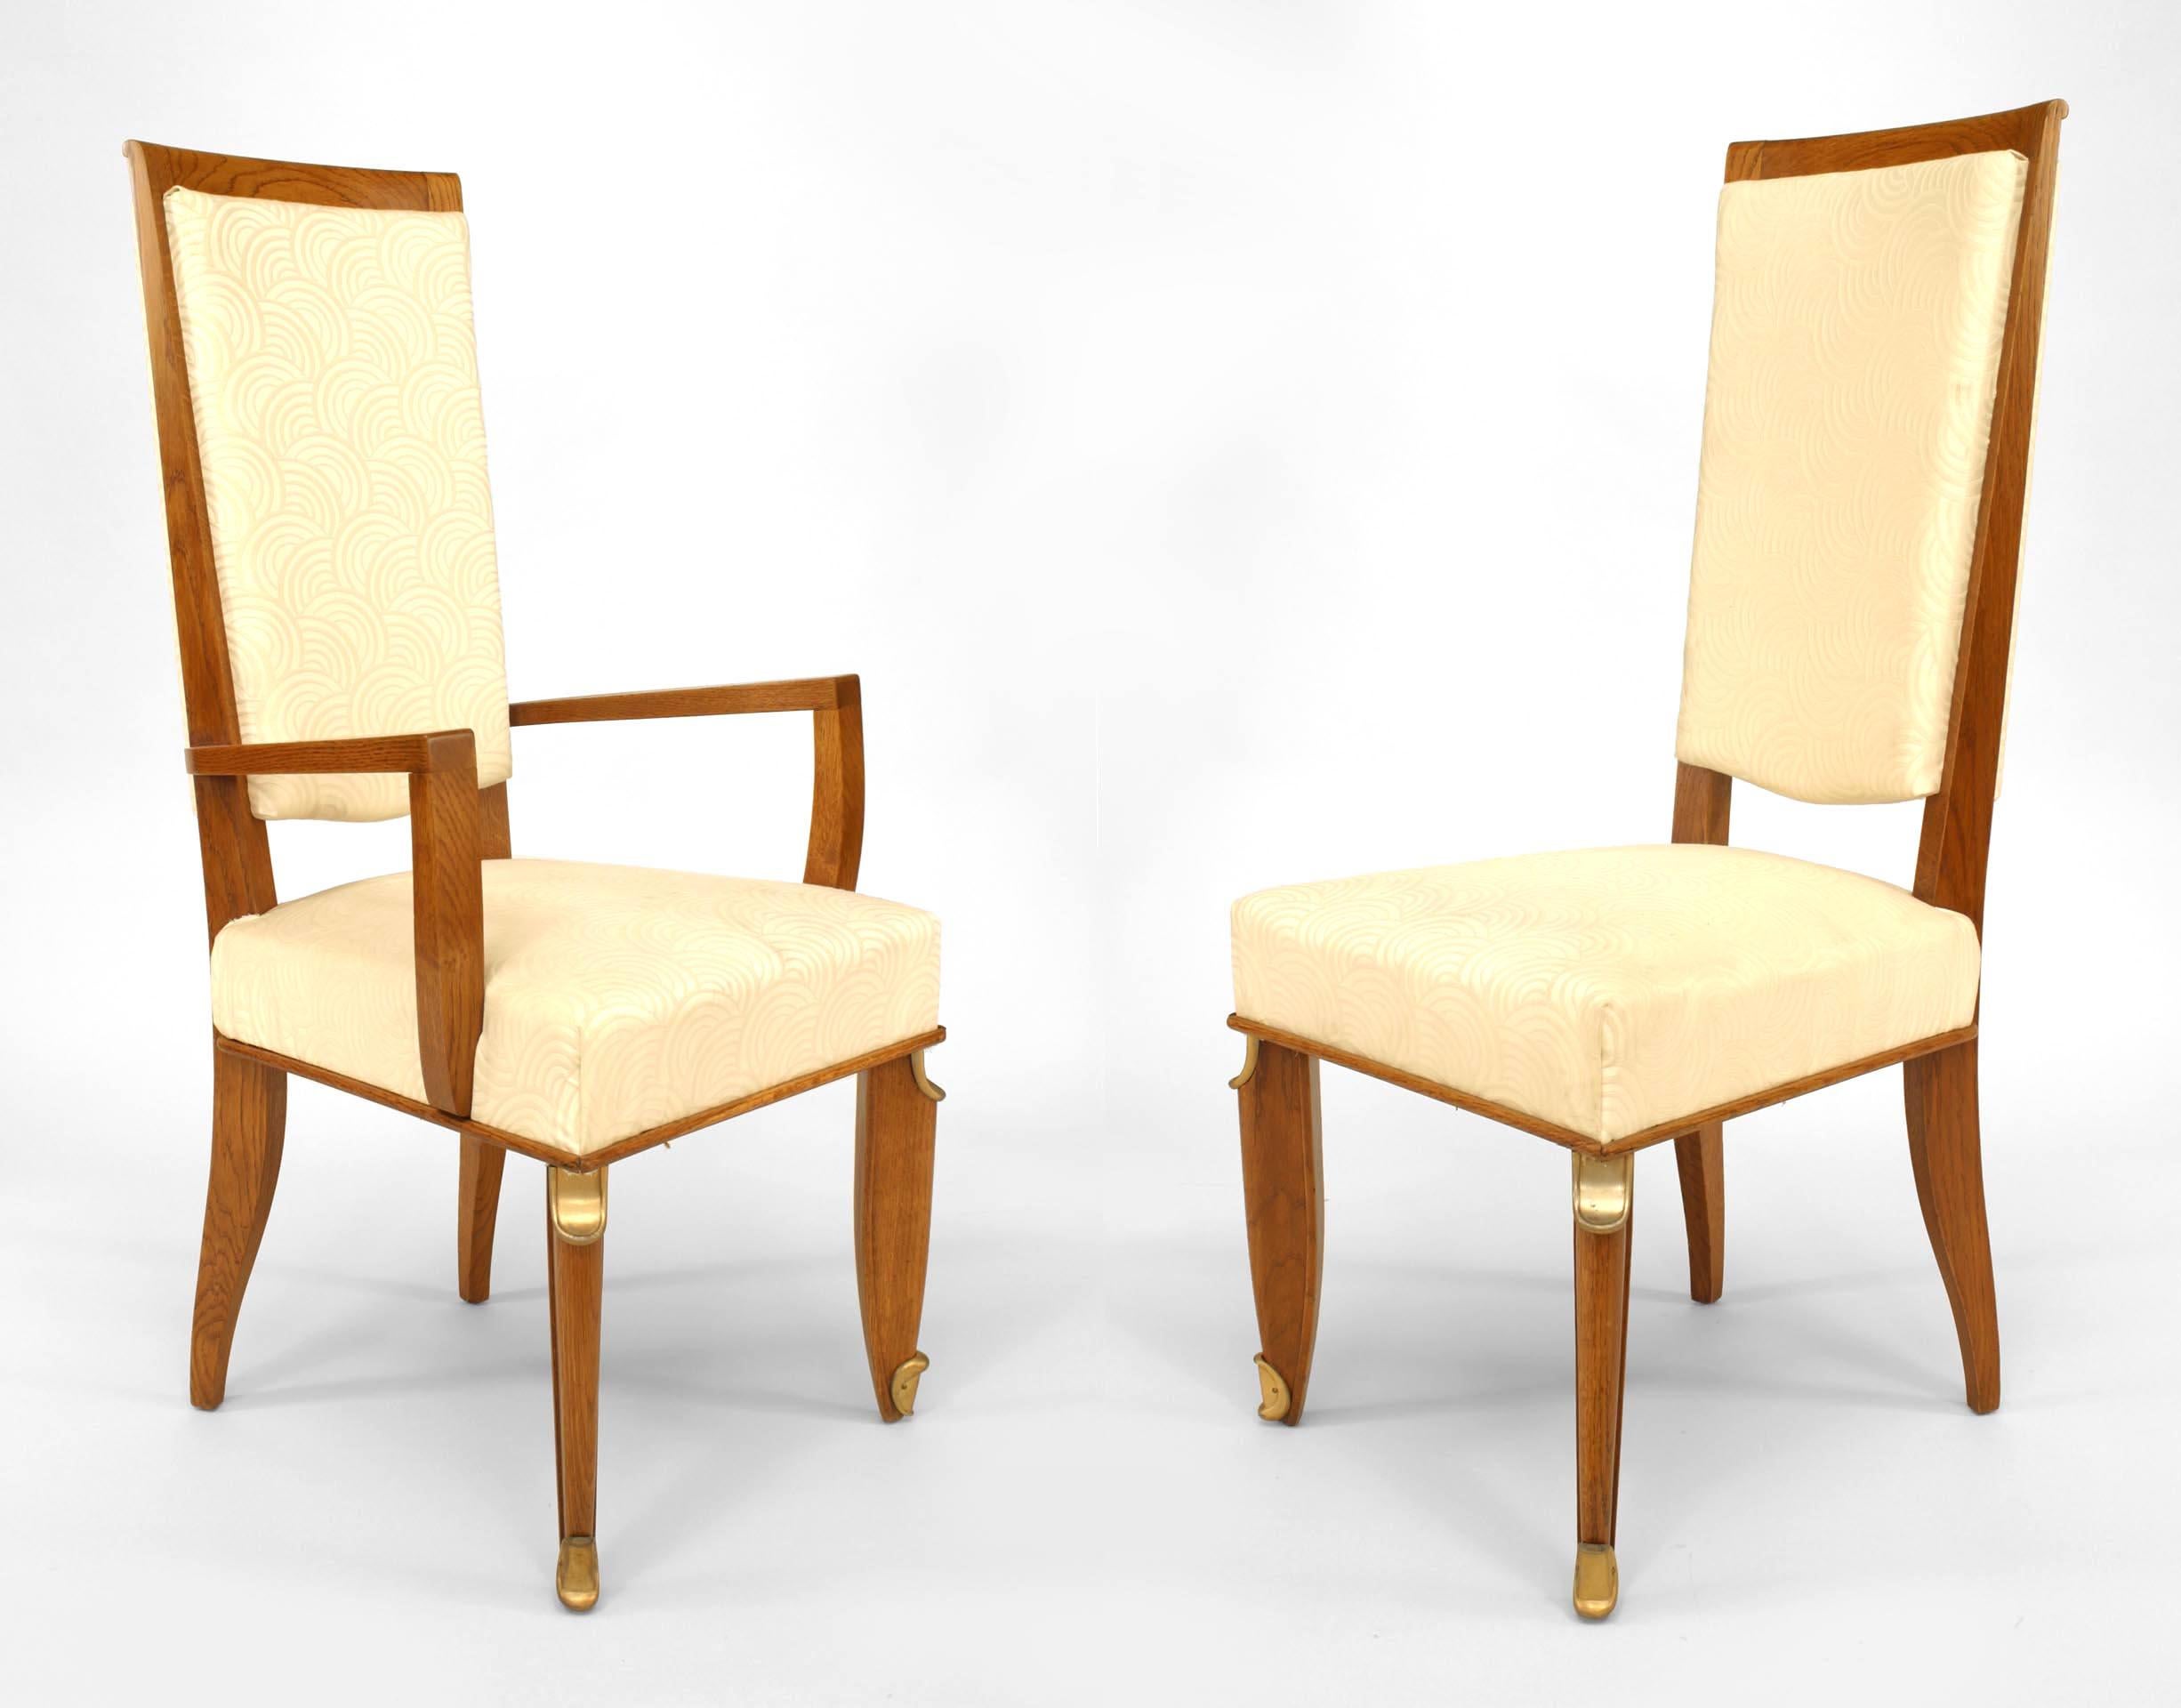 Ensemble de 8 chaises de salle à manger françaises des années 1940 en chêne monté en bronze à haut dossier tapissé de soie blanche (att : MAURICE JALLOT) (2 fauteuils : 21¬æ 